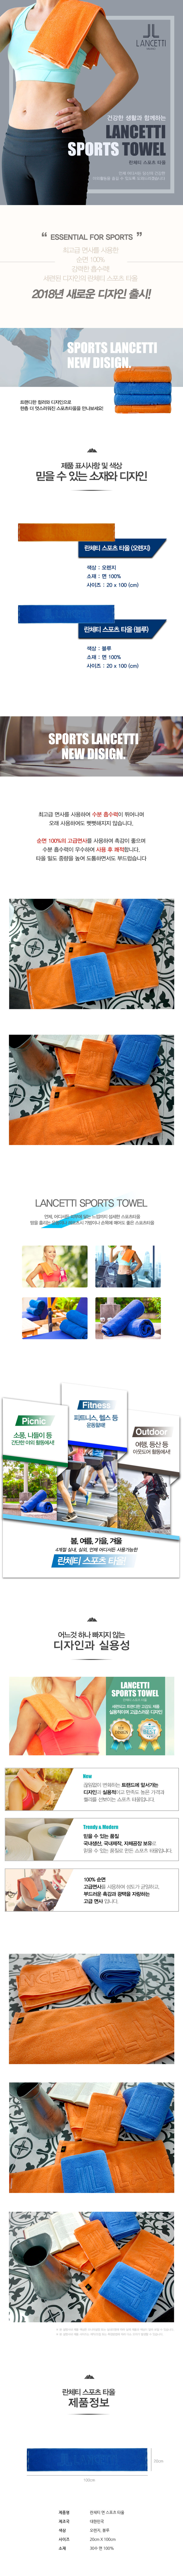 lancetti_sports_towel.jpg